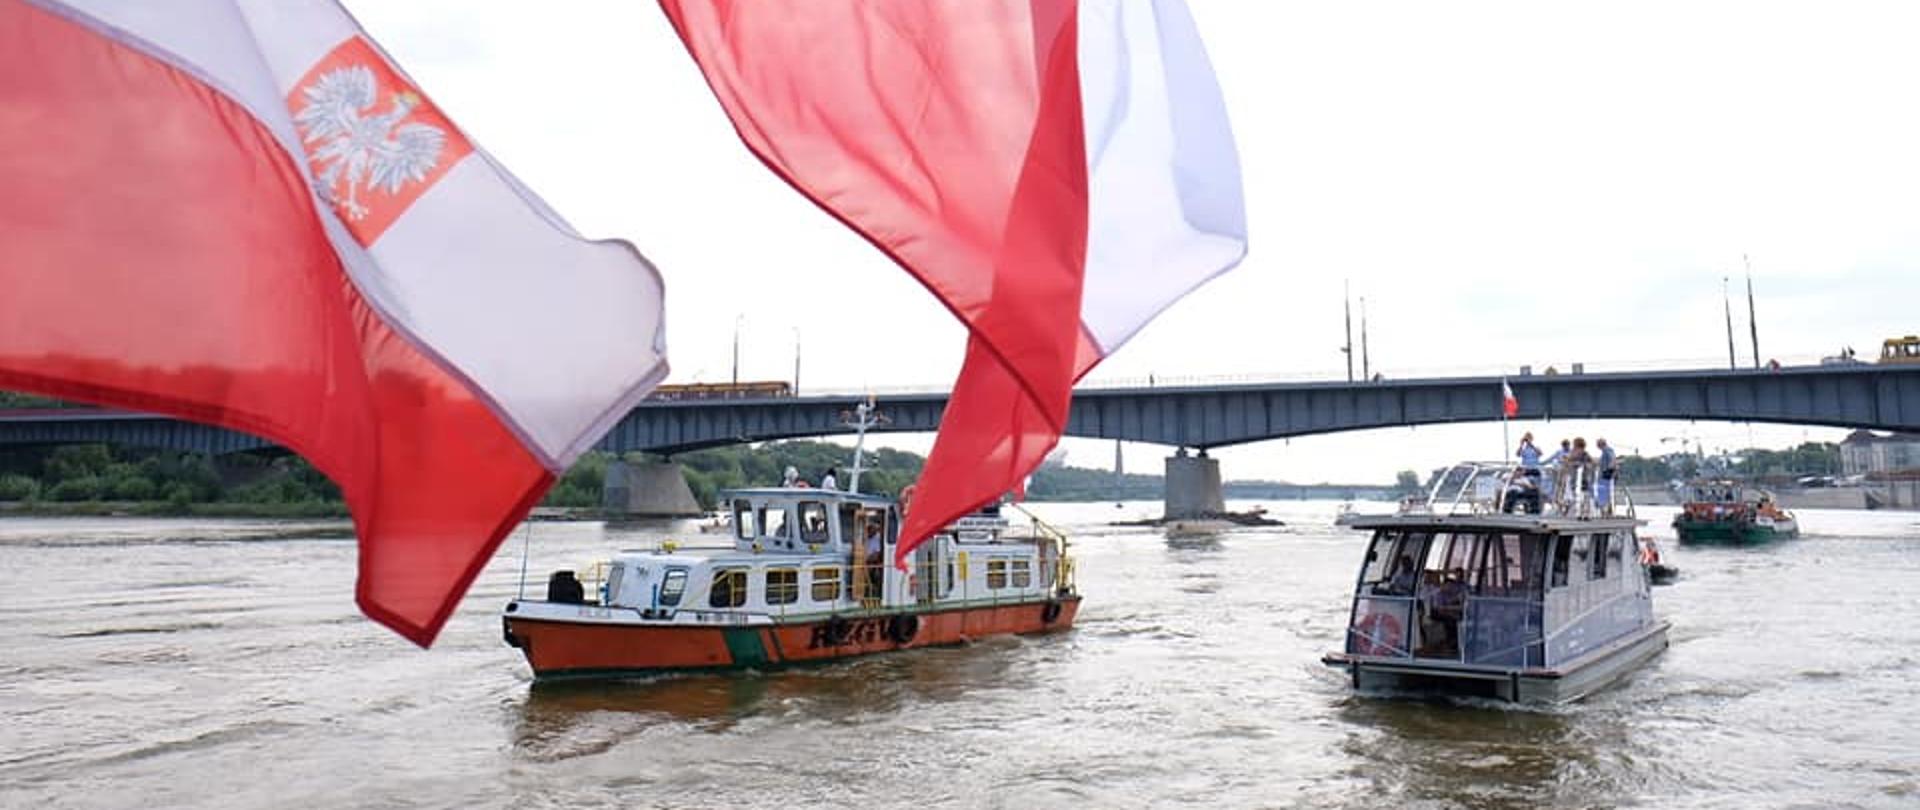 barki płynące po Wiśle w stronę kanału Żerańskiego, na pierwszym planie flaga Polski.